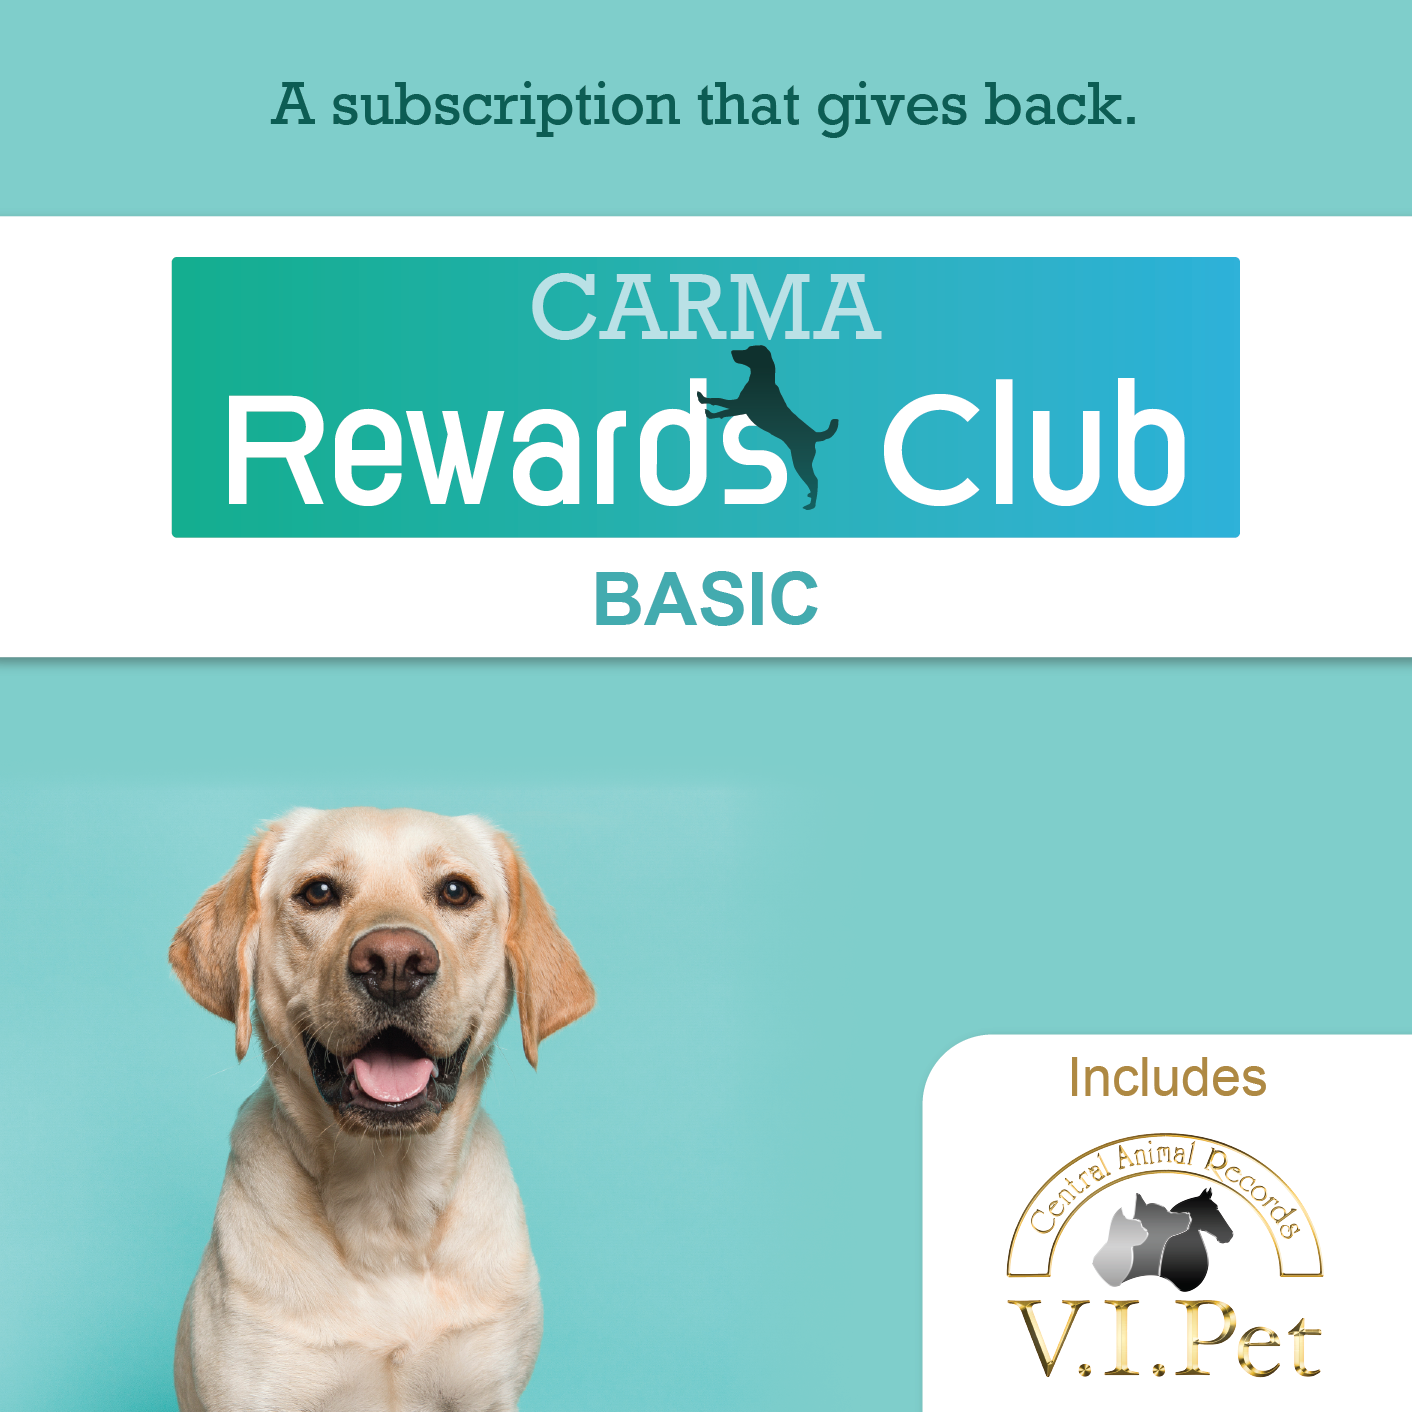 CARMA Rewards Club BASIC with Labrador Retriever 